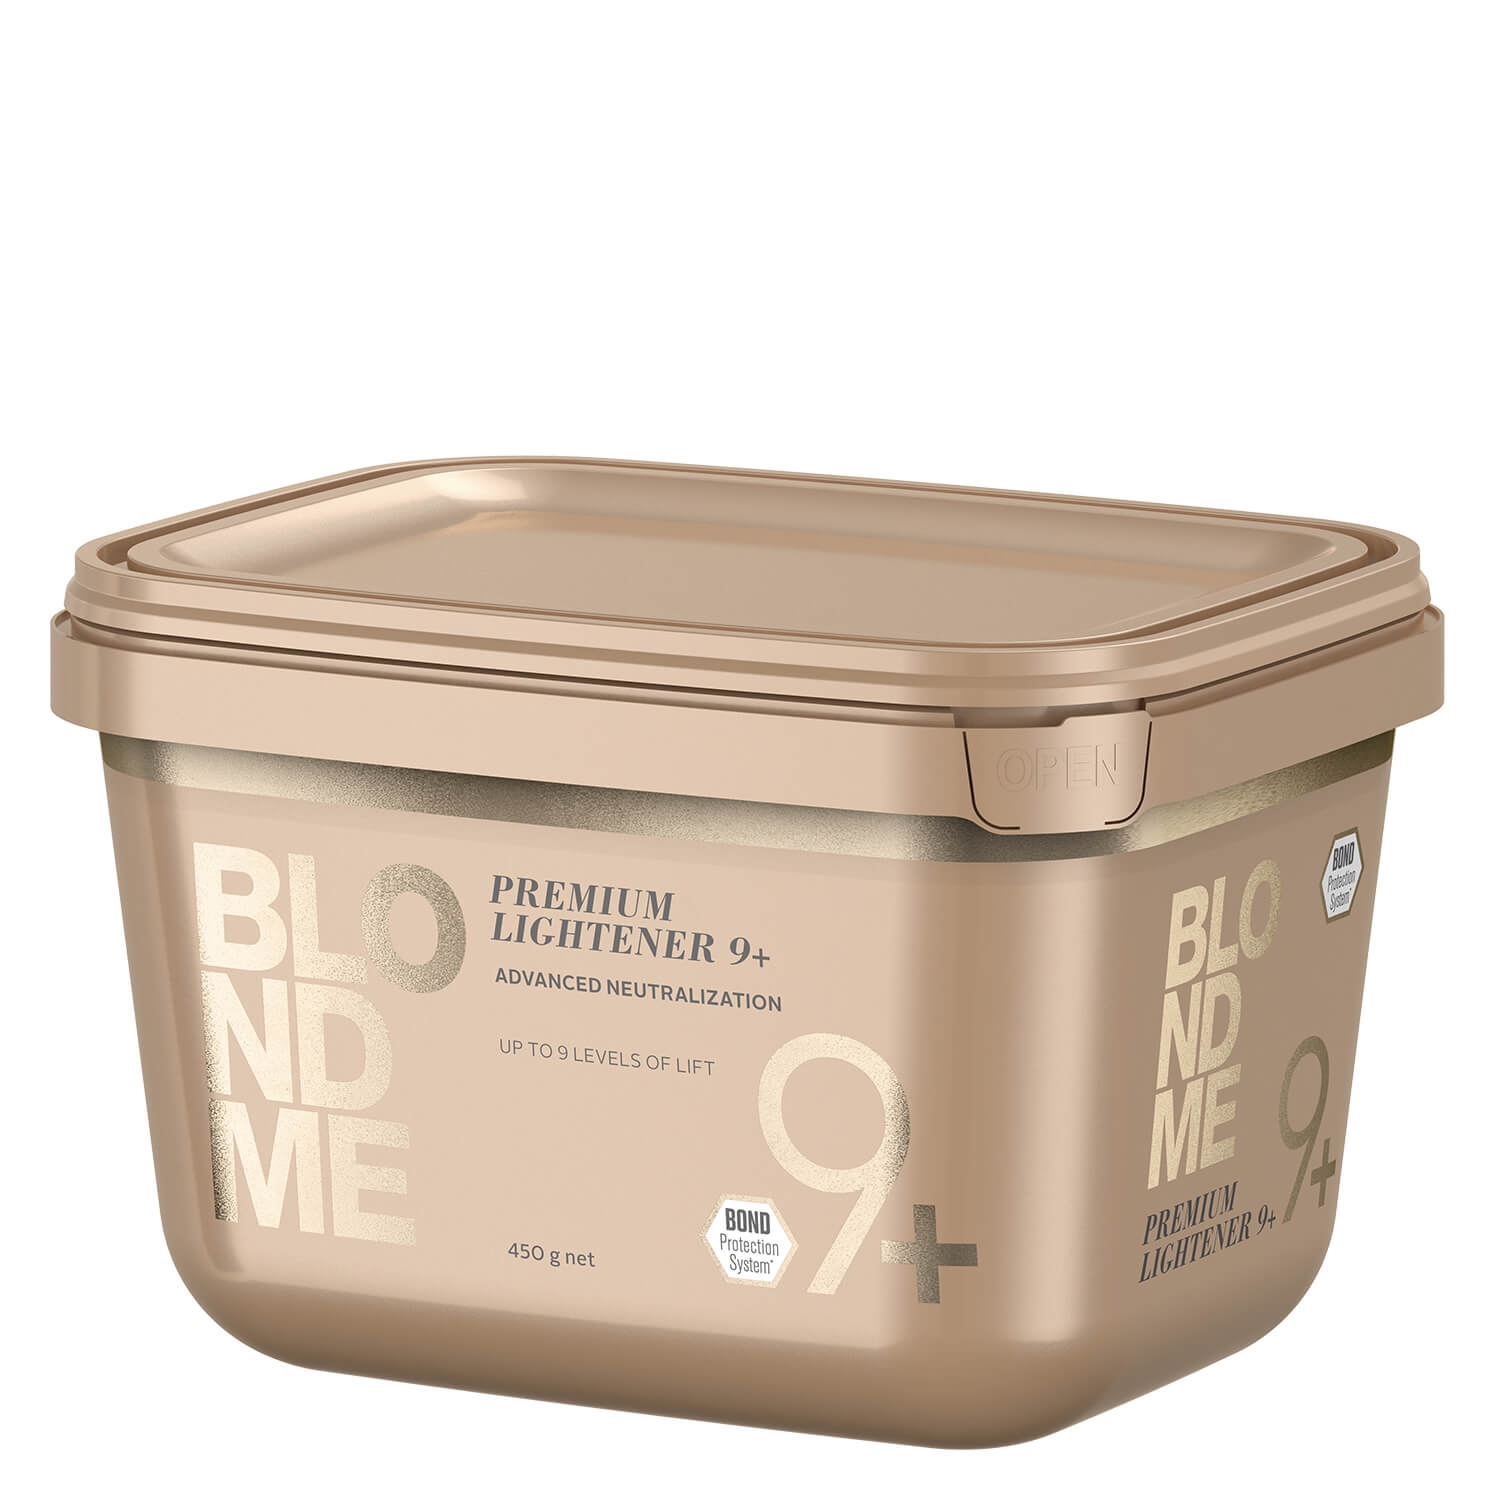 Produktbild von Blondme - Premium Lightener 9+